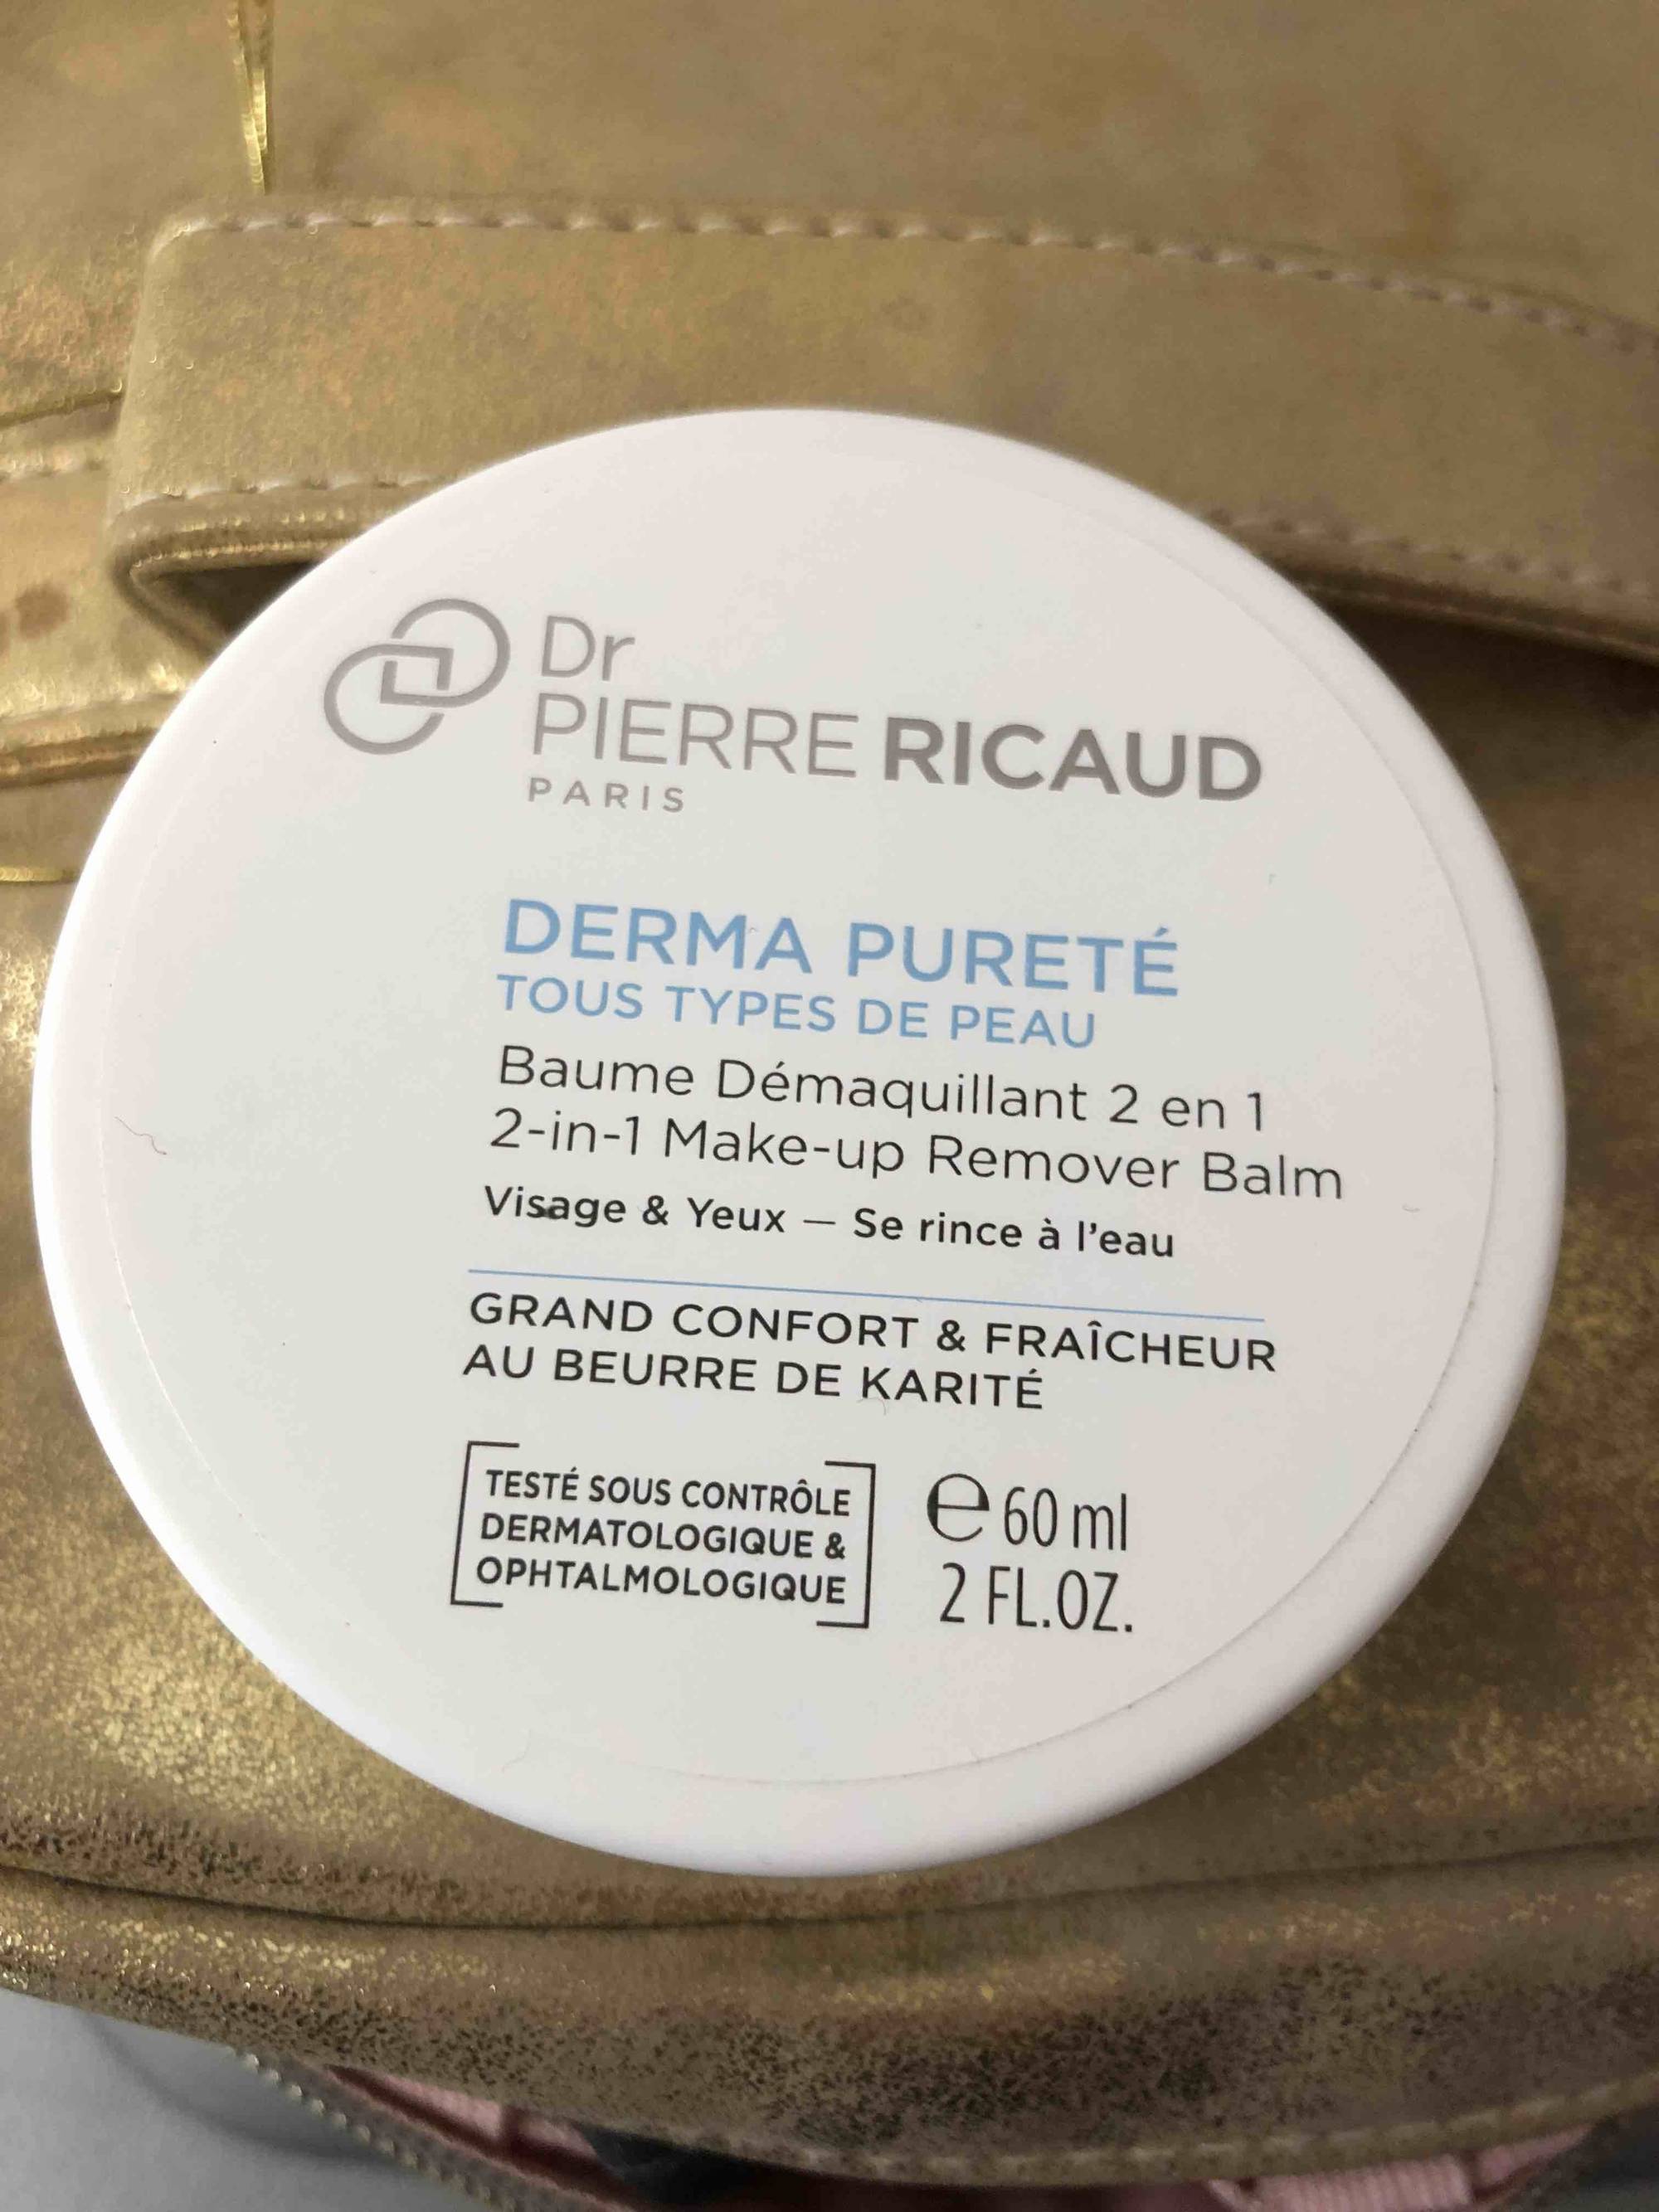 DR PIERRE RICAUD - Derma pureté - Baume démaquillant 2 en 1